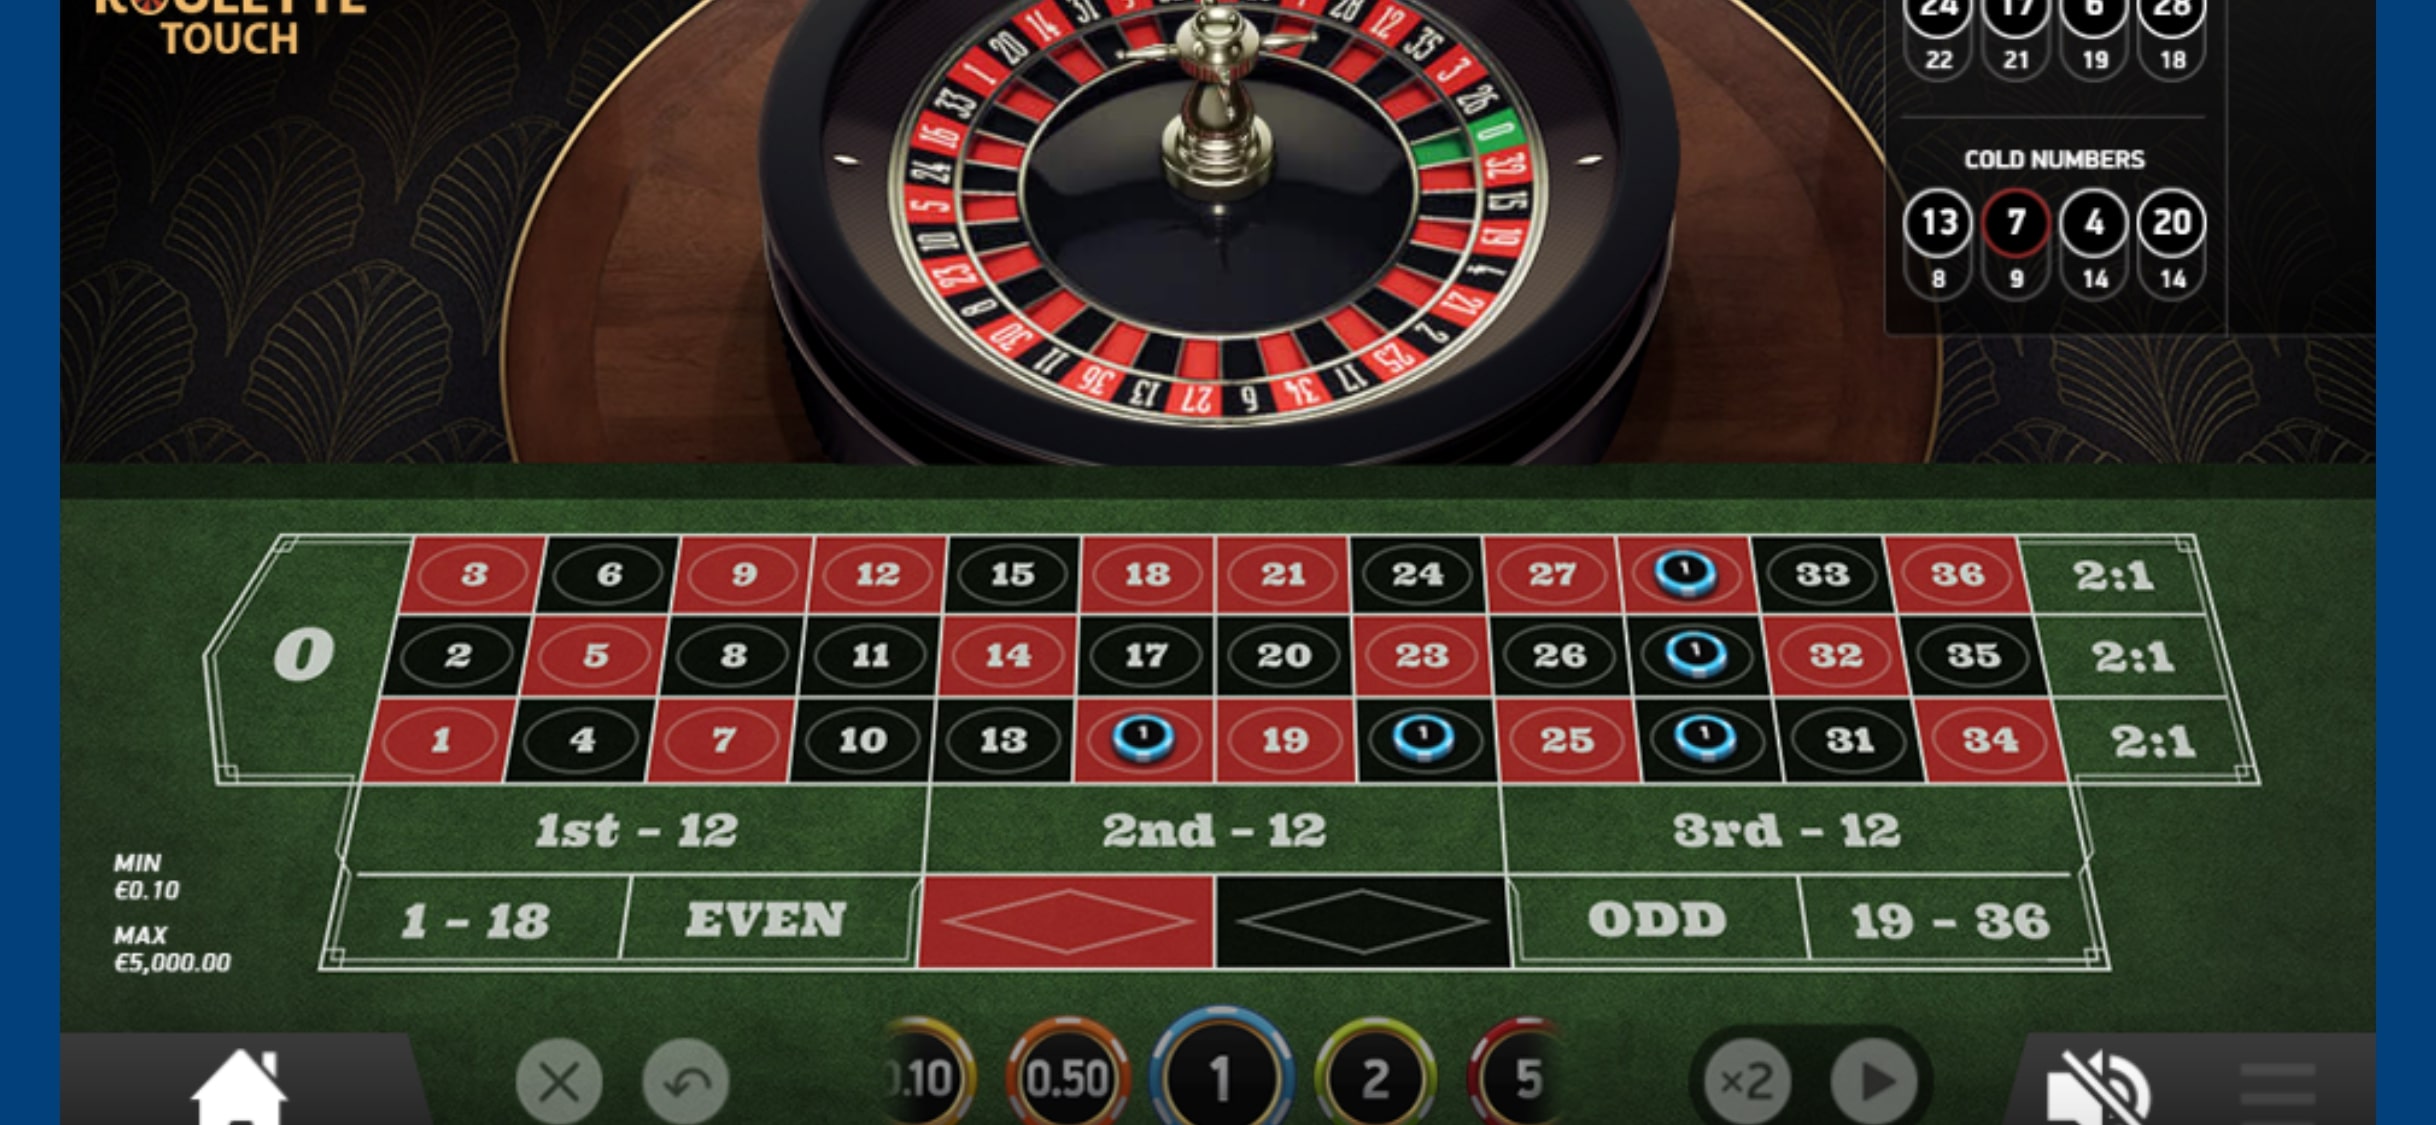 ScandiBet Casino Mobile Casino Games Review